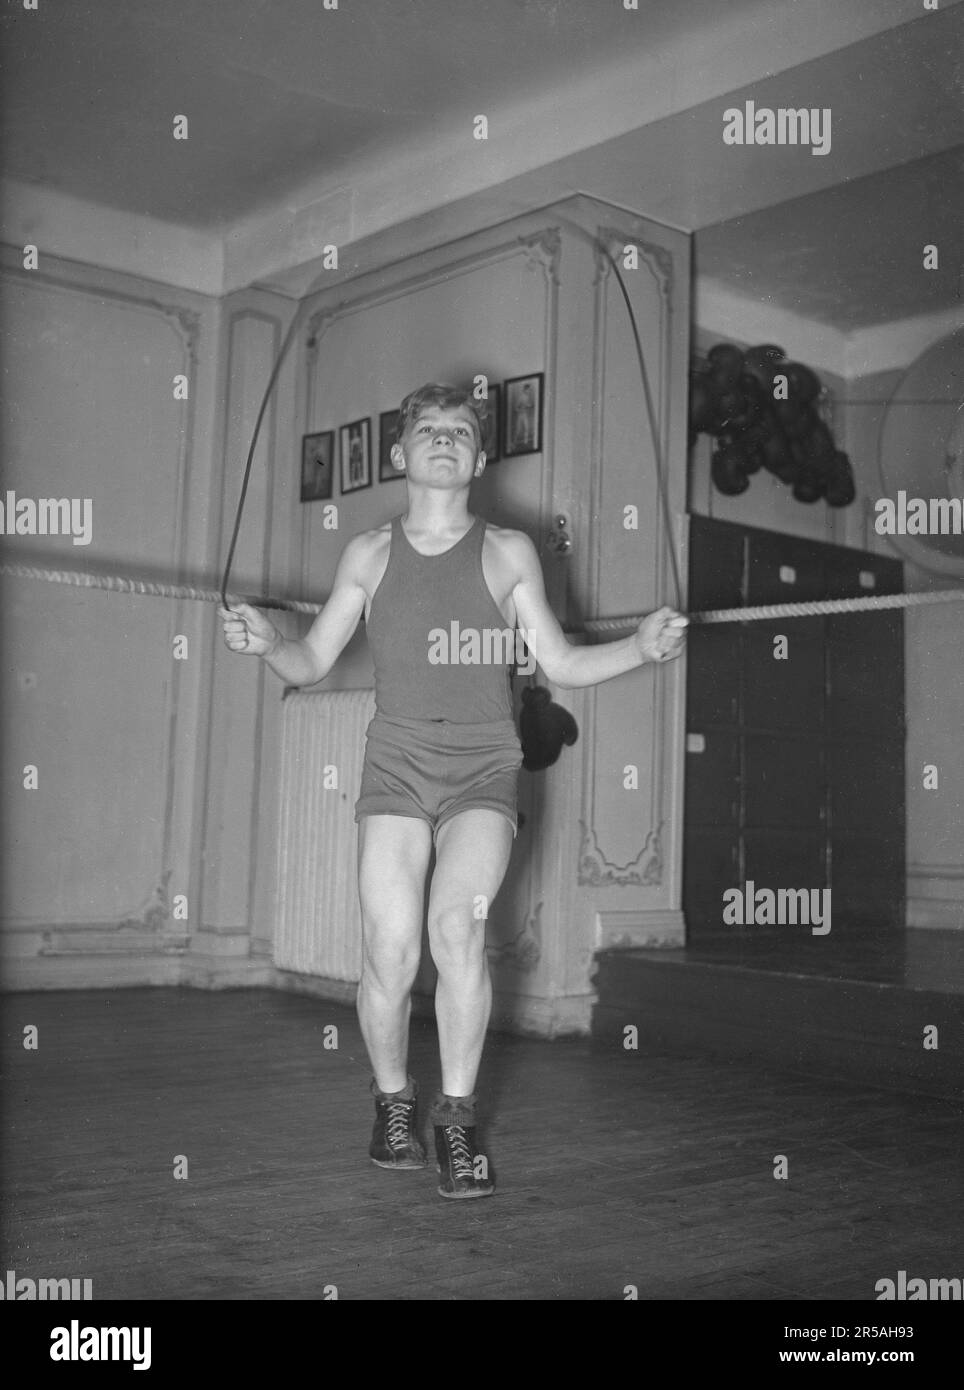 Dans le 1930s. Le jeune boxeur junior prometteur Börje Hansson à la salle de boxe, entraînement corde de saut. Suède 1939. Kristoffersson réf. 4-8 Banque D'Images